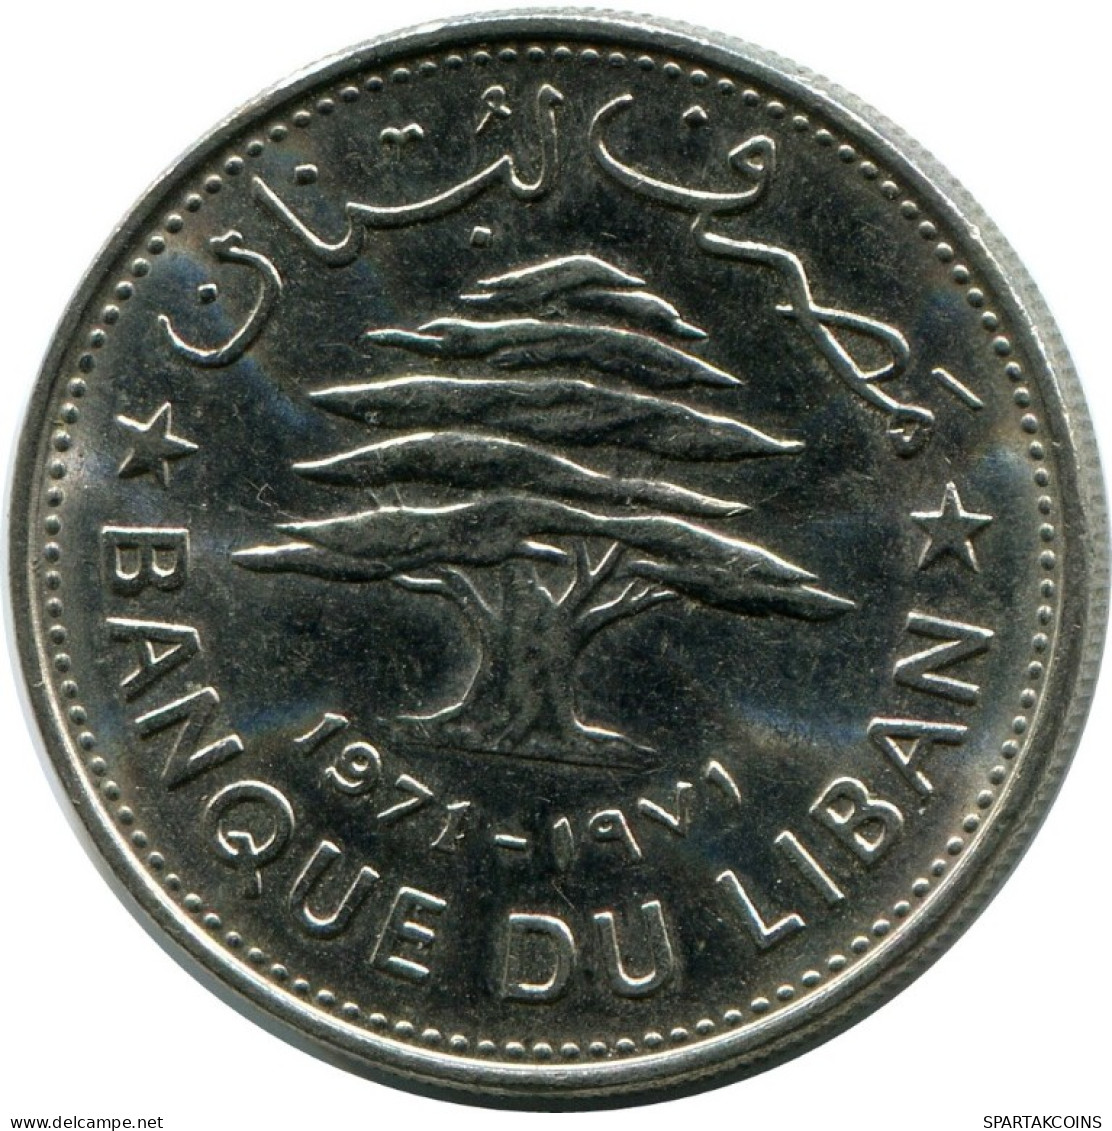 50 PIASTRES 1971 LEBANON Coin #AH803.U.A - Lebanon